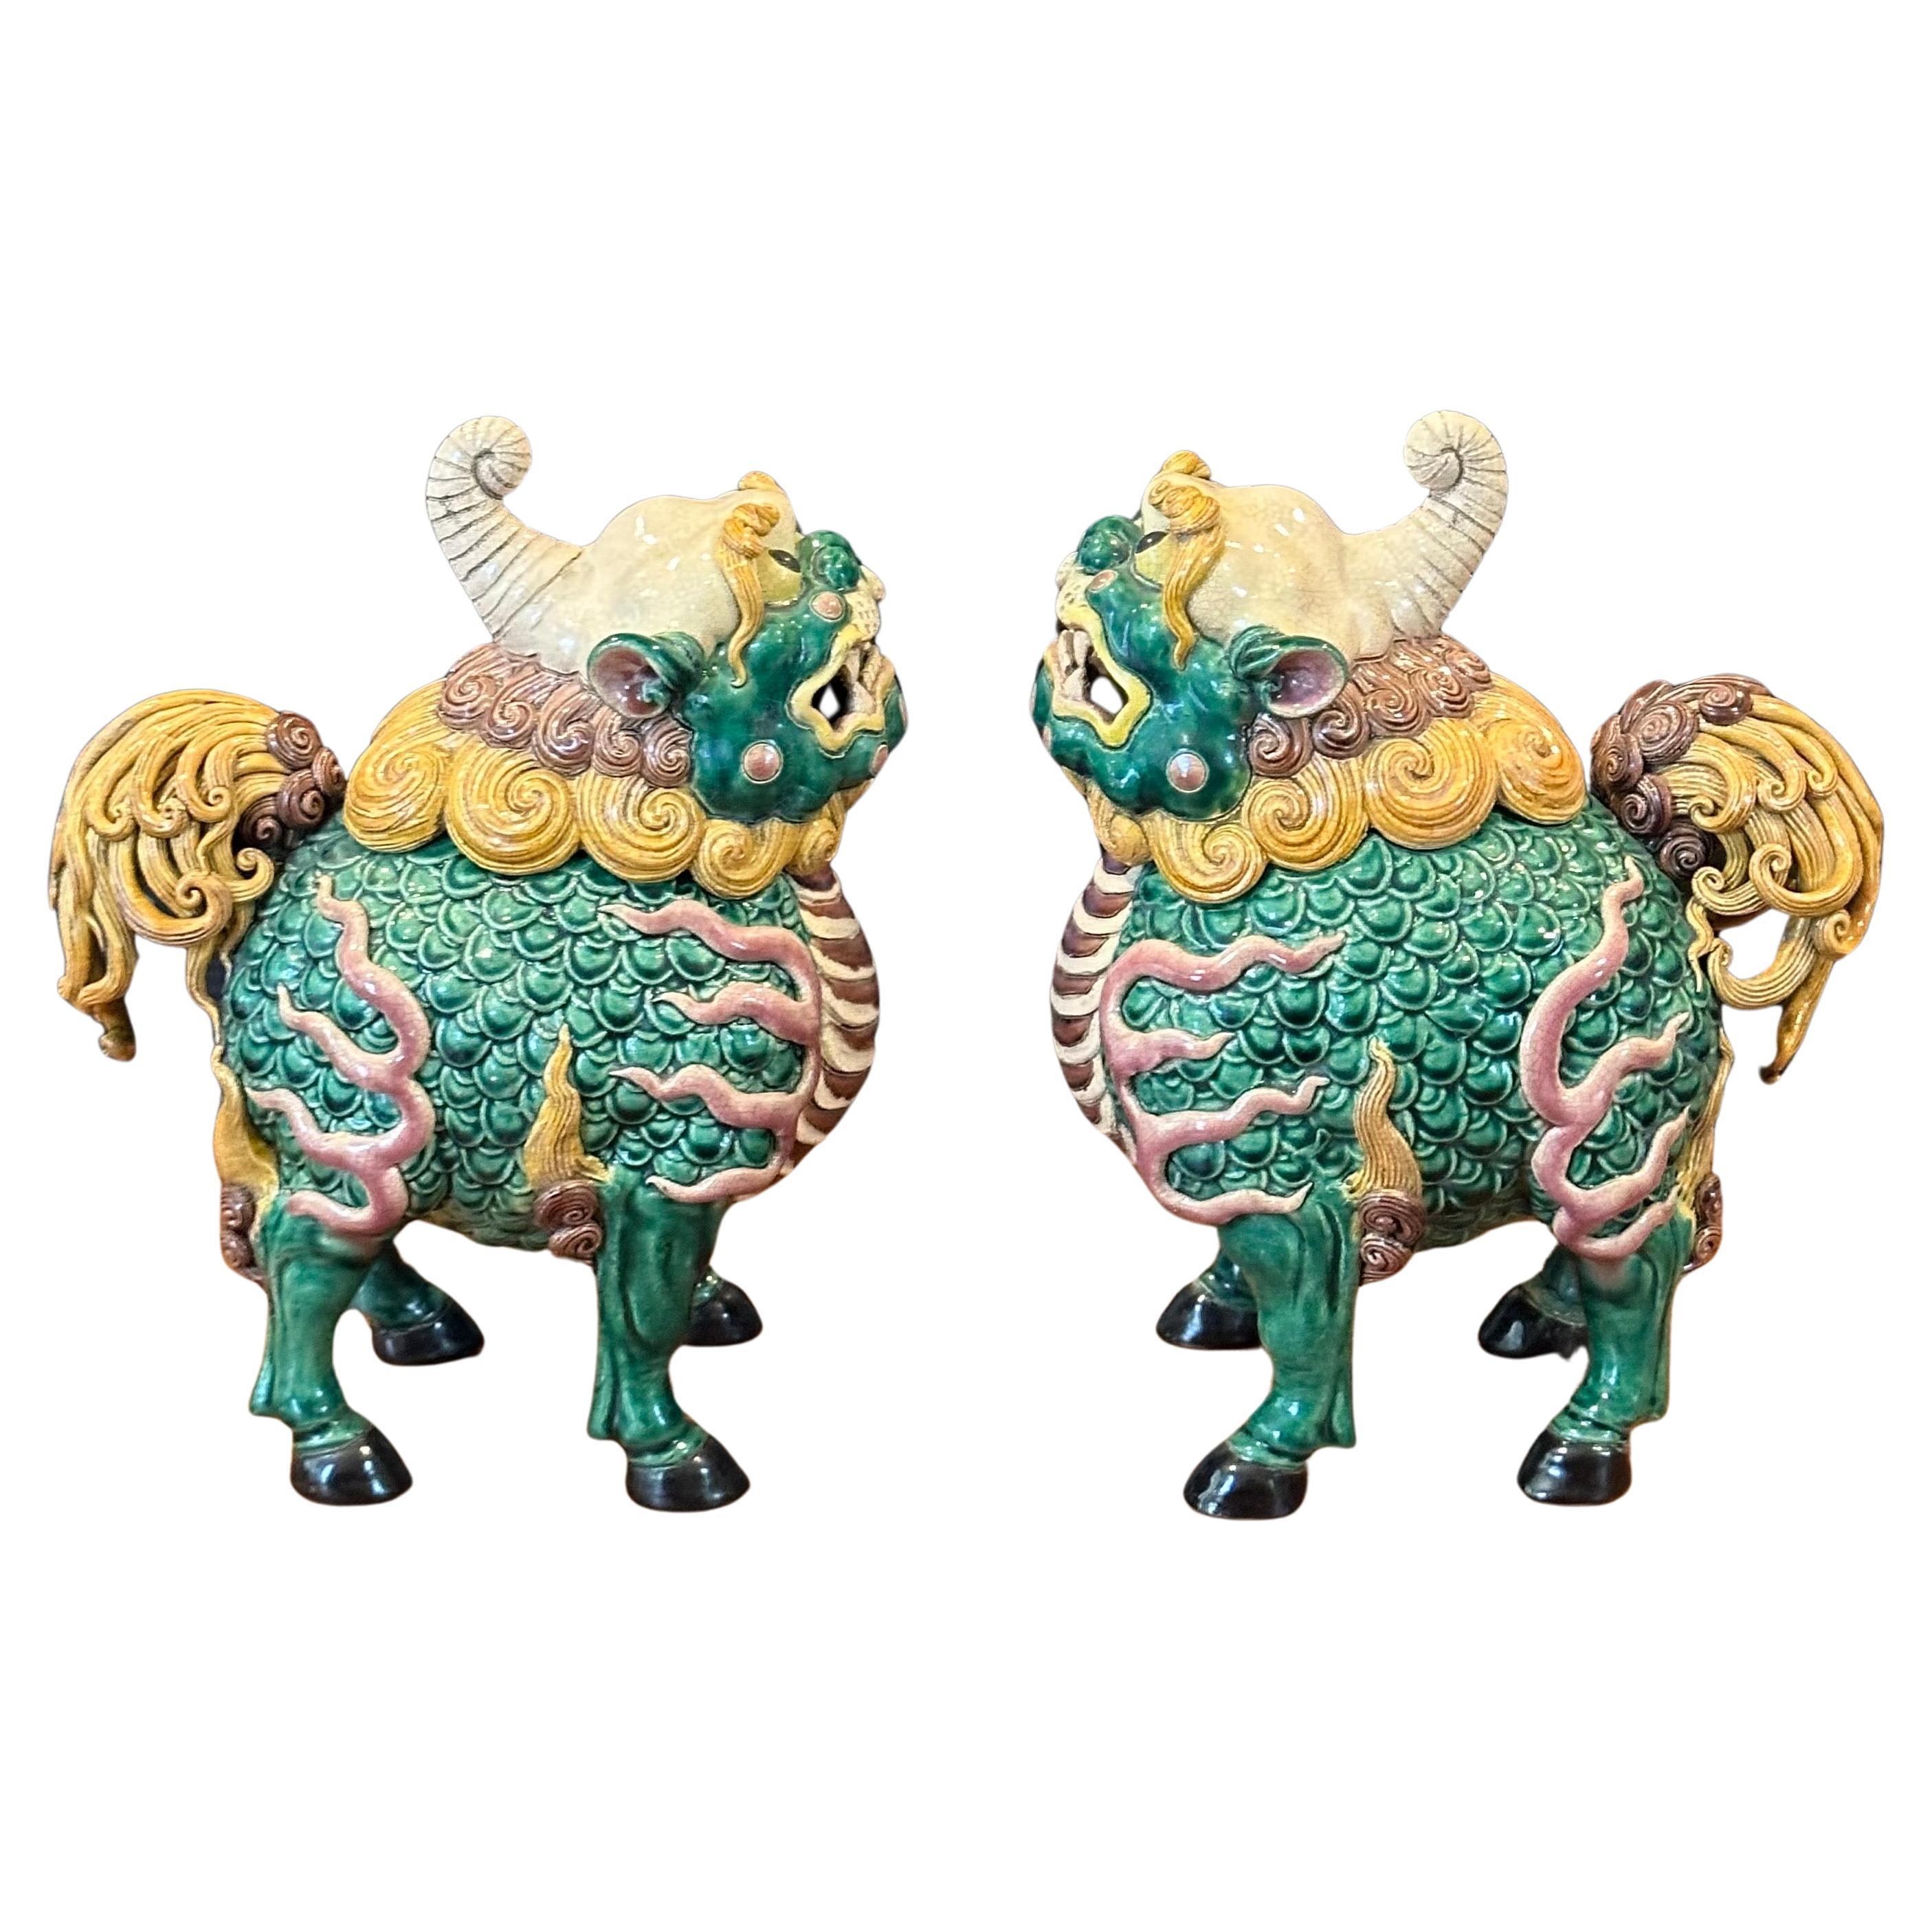 Fantastique paire d'encensoirs à chiens en céramique chinoise polychrome du milieu du siècle, vers les années 1970. La paire mesure 14 